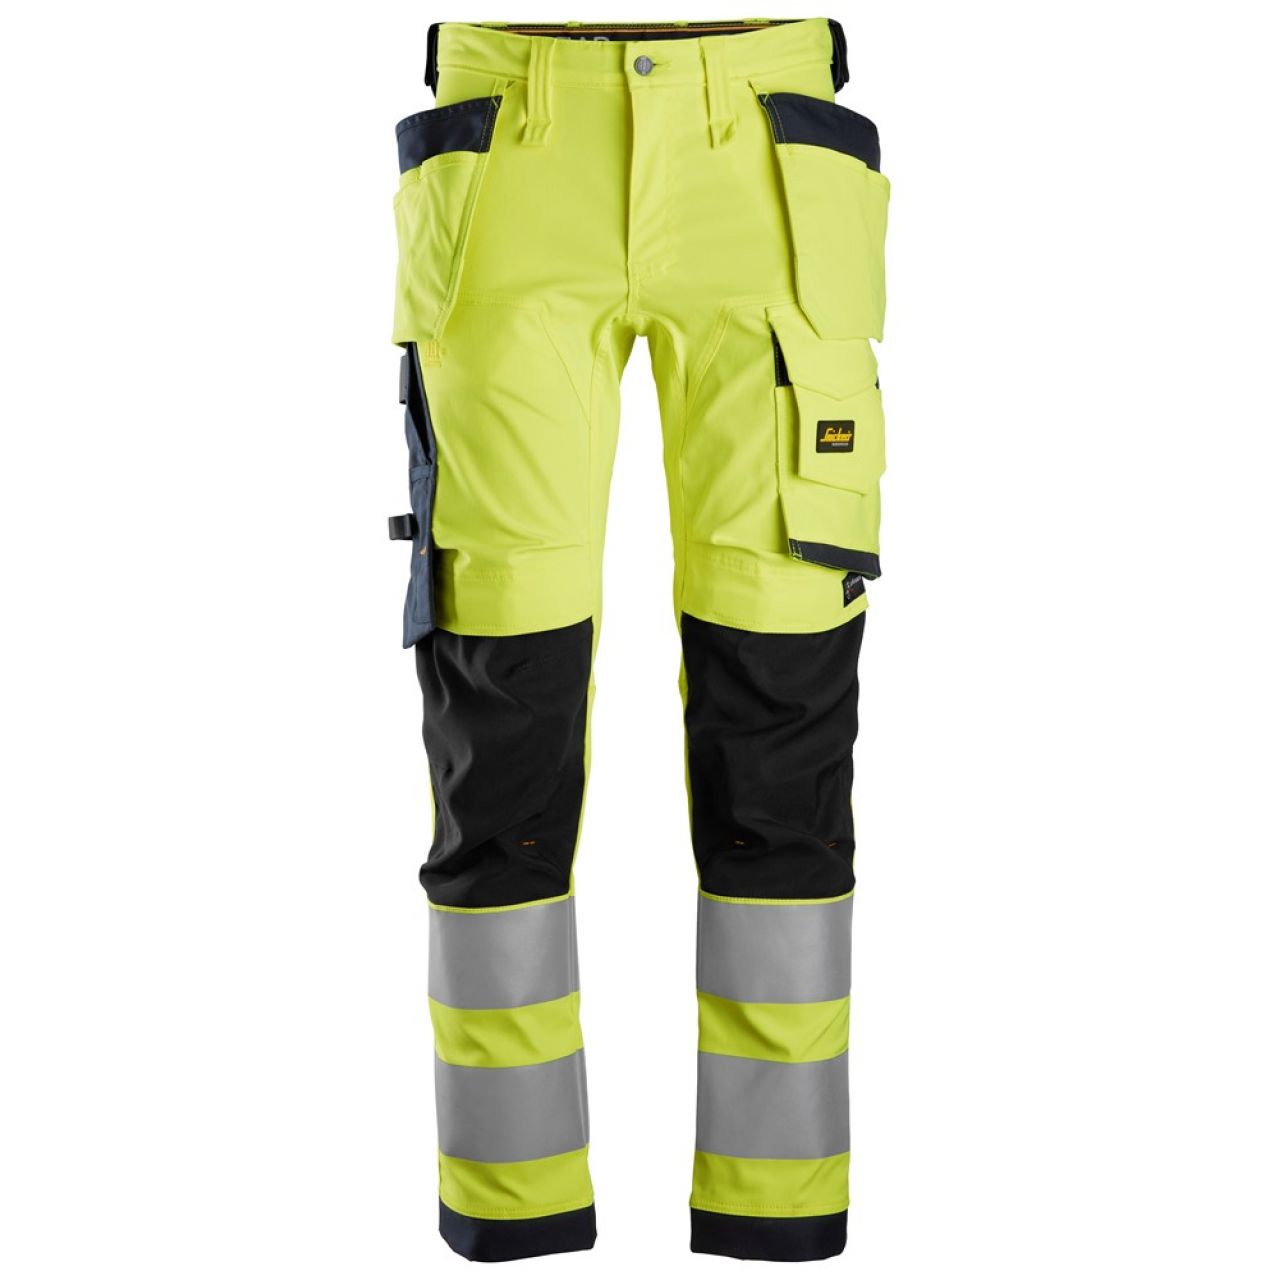 6243 Pantalones largos de trabajo elásticos de alta visibilidad clase 2 con bolsillos flotantes amarillo-azul marino talla 254